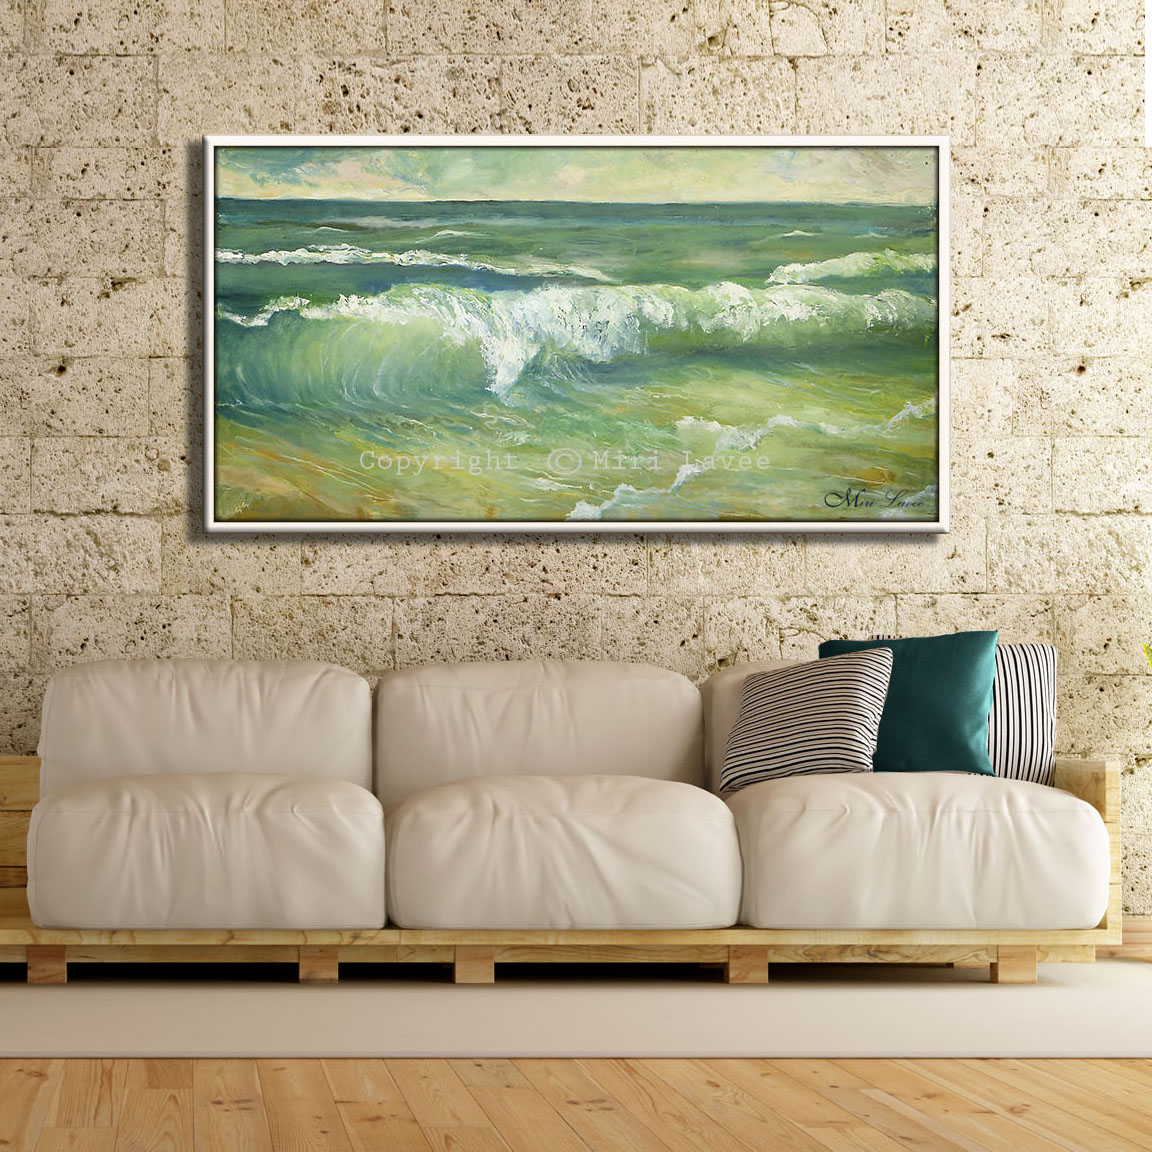 ציור ים וקצף גלים בגוונים ירוקים, בסלון מעל ספה בהירה ציירת מירי לביא